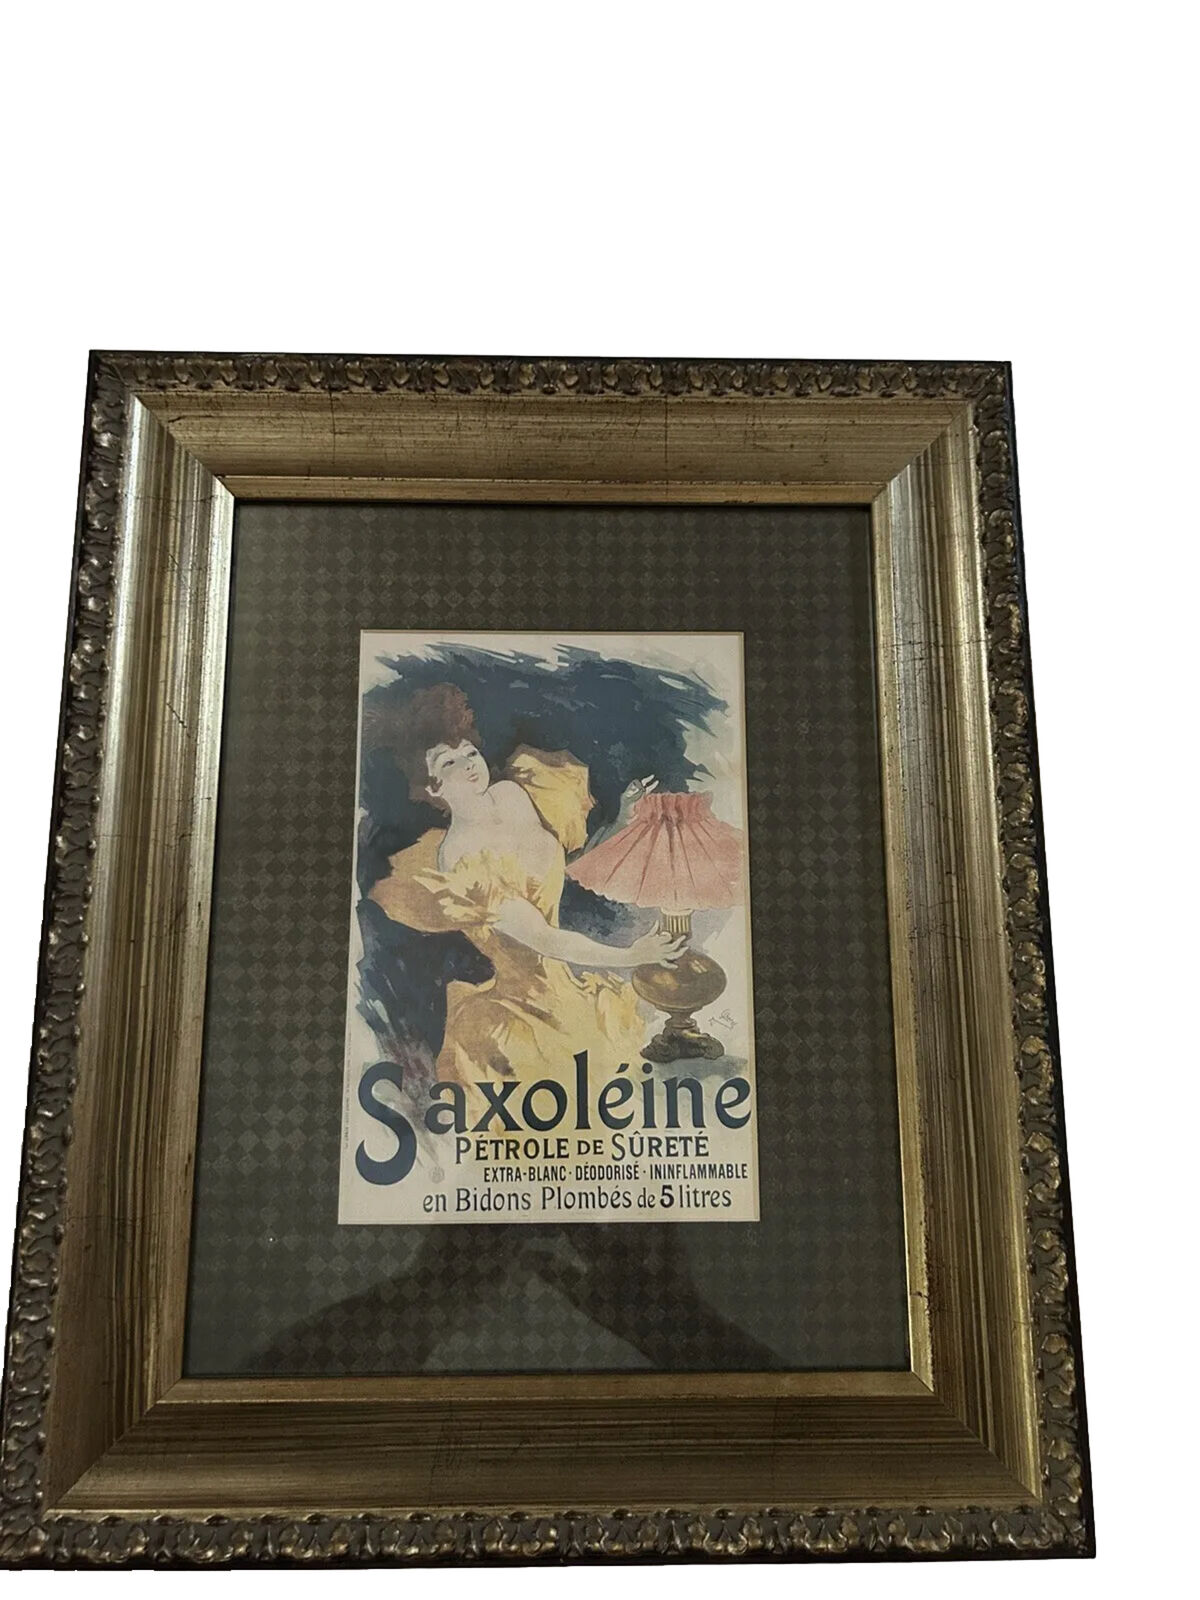 1896 JULES CHERET SAXOLEINE PETROLE SURETE Poster Litho LES AFFICHES ILLUSTREES